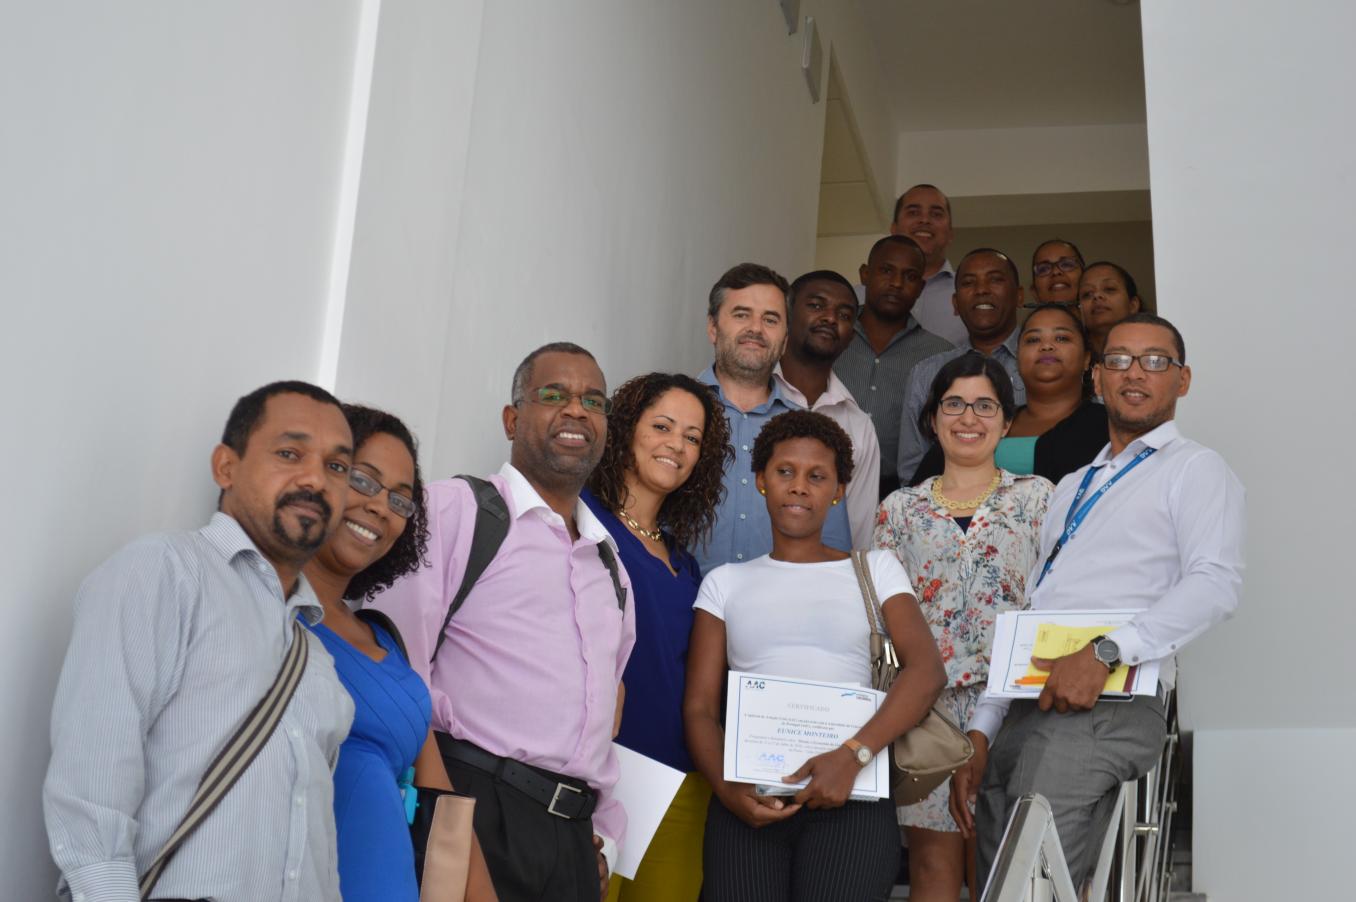 2016 — Nos dias 11 e 12 de julho, realizou-se na Cidade da Praia, um Curso de Formação em Direito e Economia da Concorrência, organizado pela Agência da Aviação Civil de Cabo Verde (AAC), com participantes de vários reguladores setoriais do país.